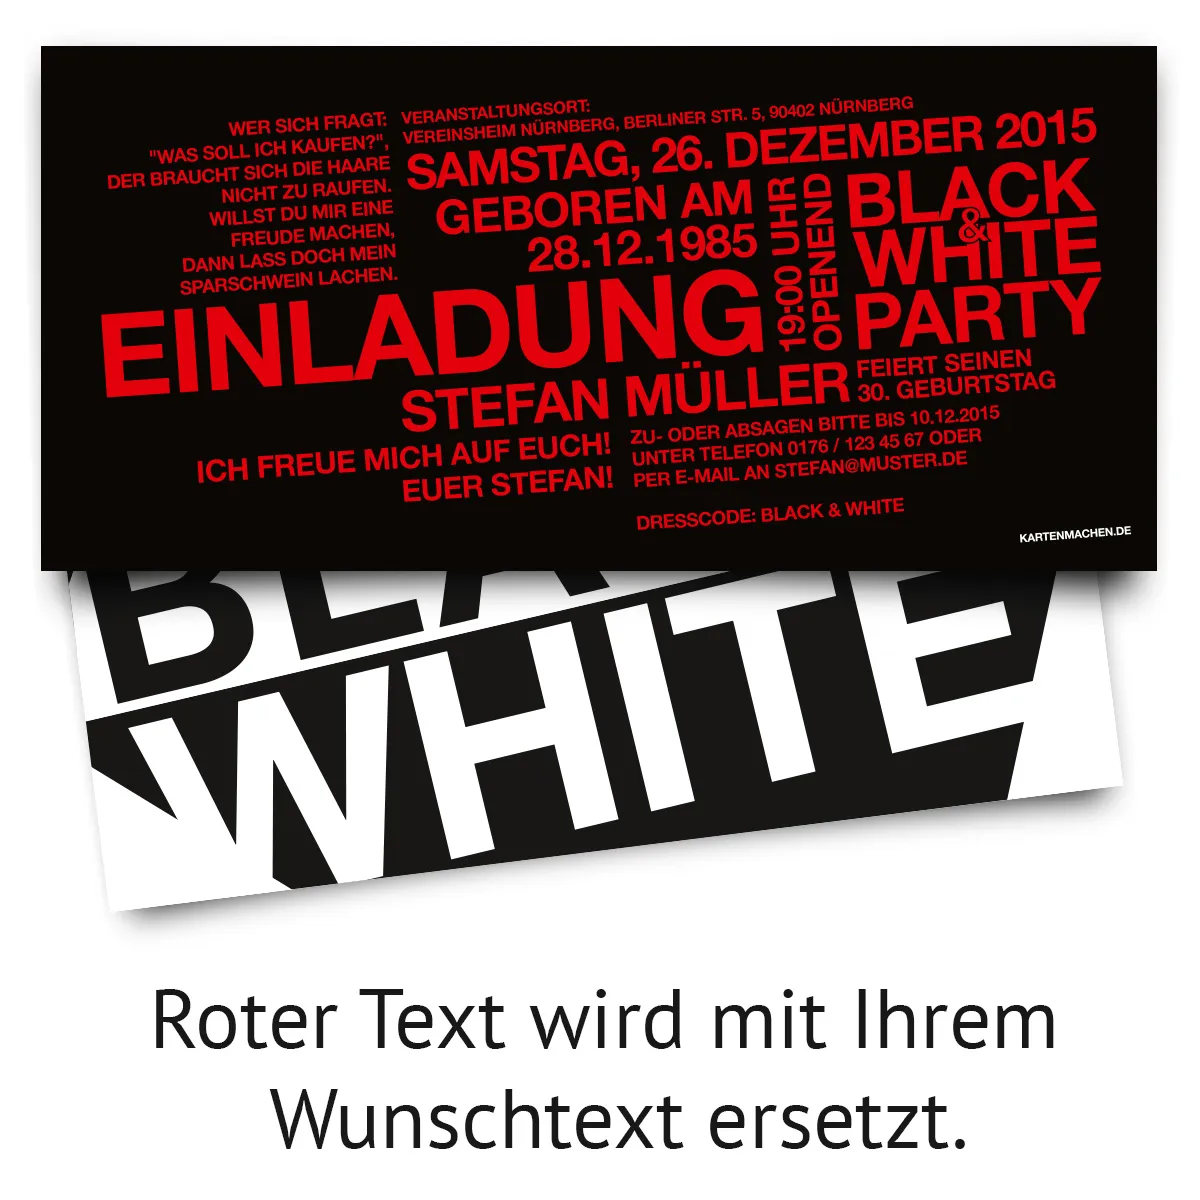 Geburtstag Einladungen - Black & White Party in Schwarz